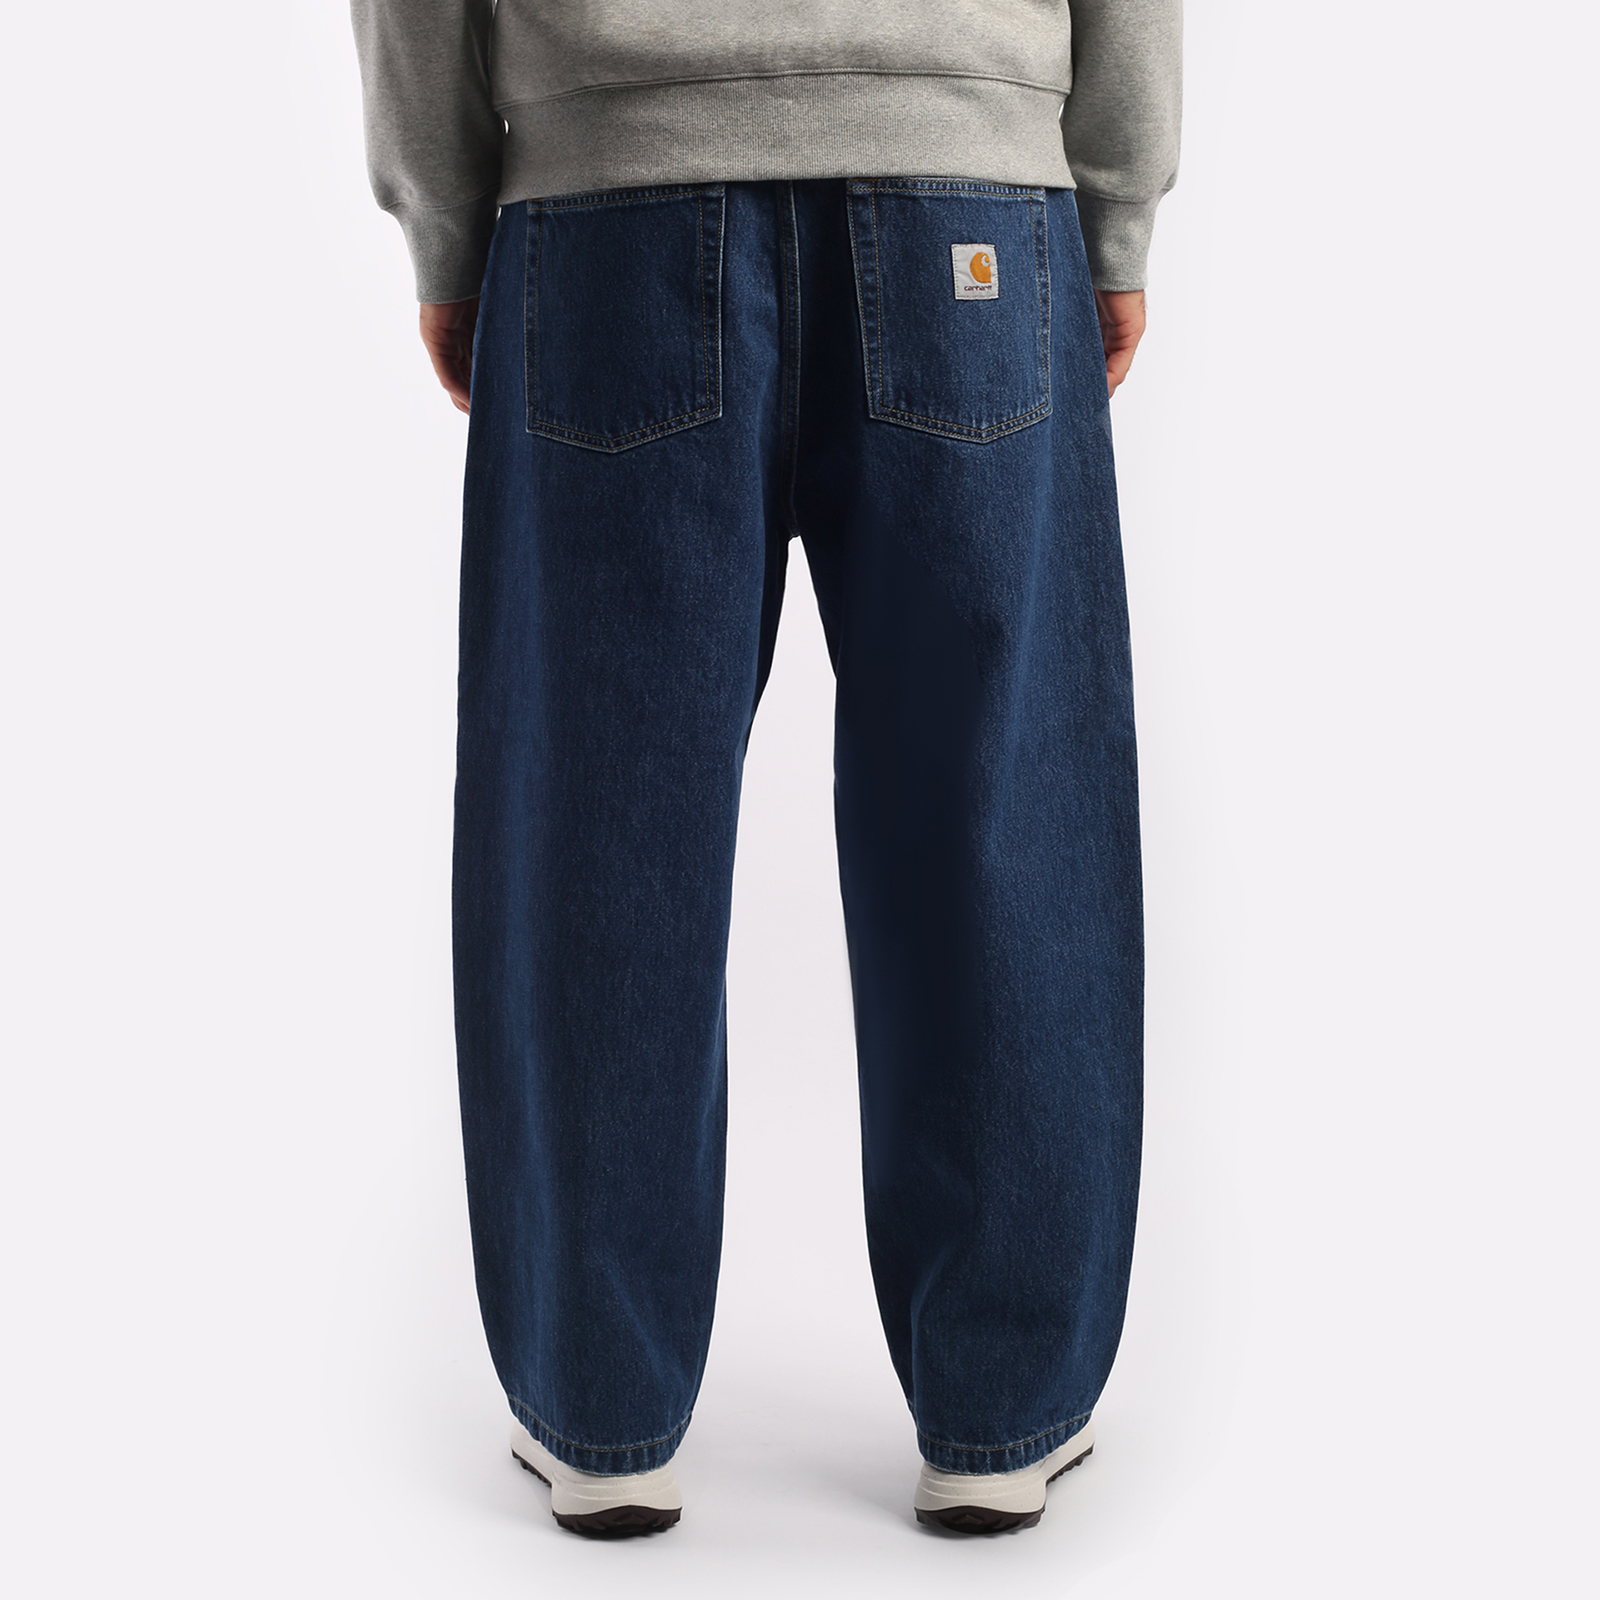 мужские брюки Carhartt WIP Smith  (I031246-blue)  - цена, описание, фото 2